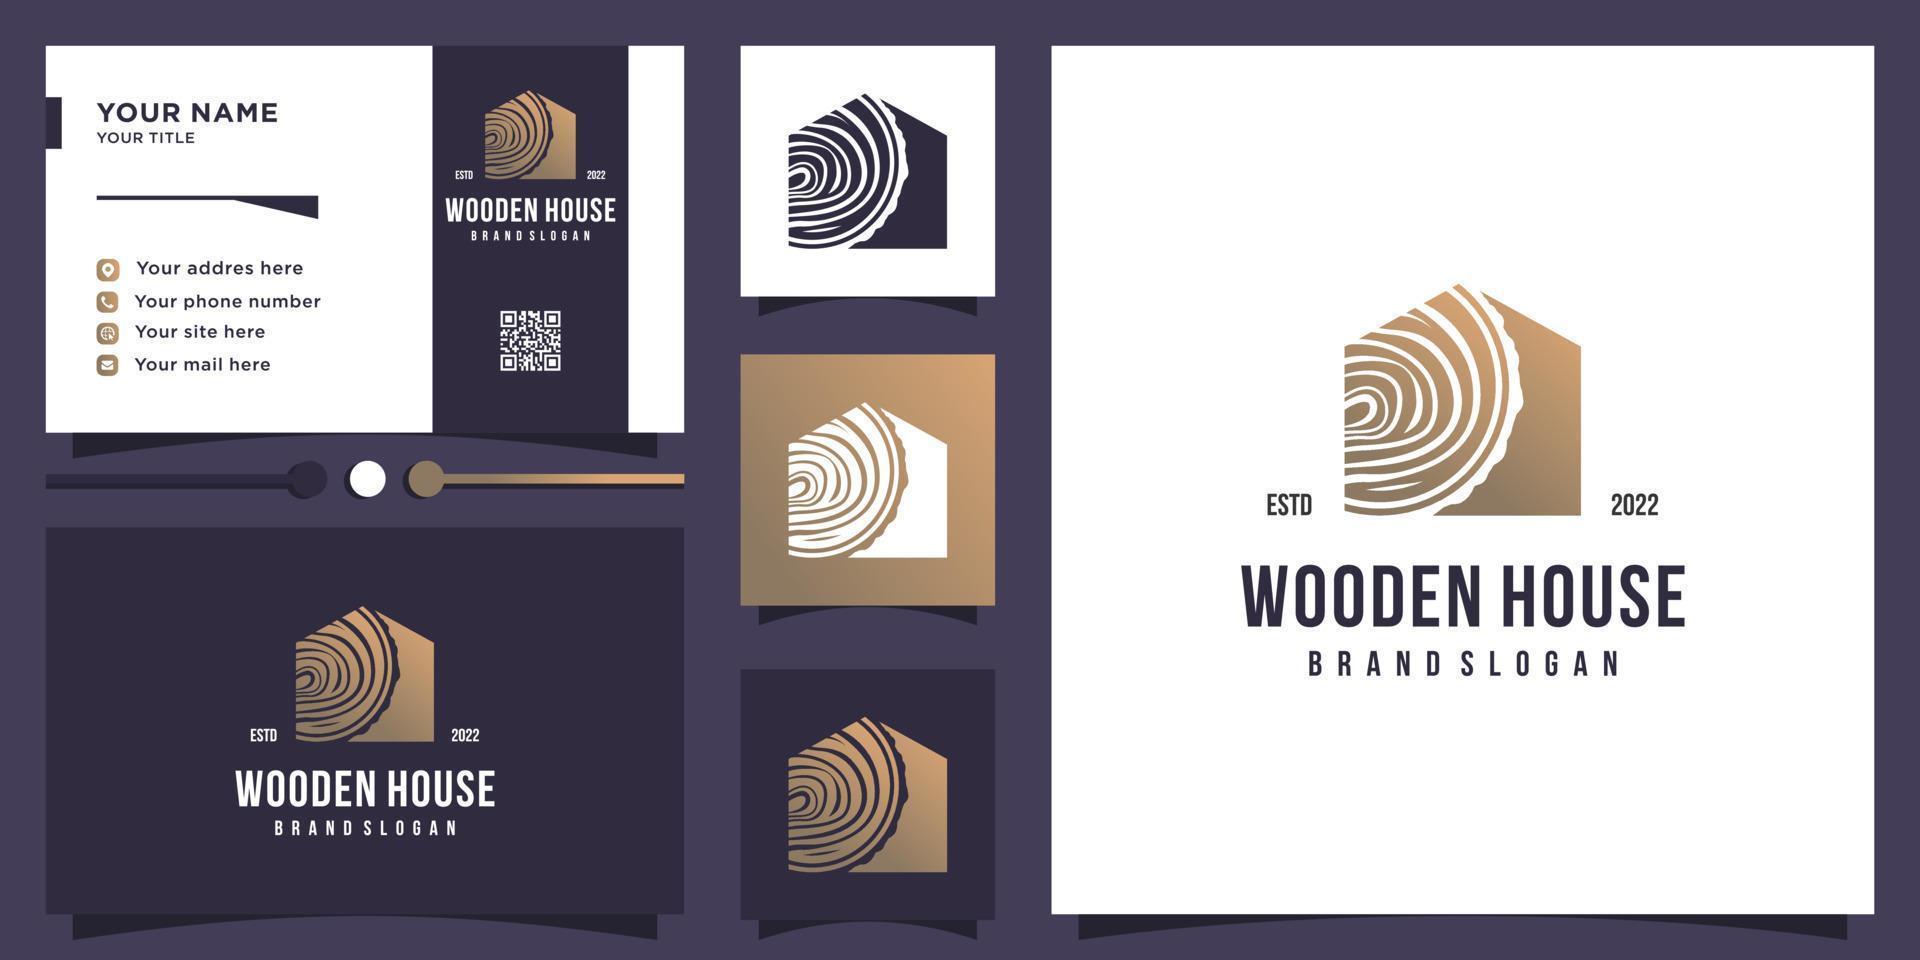 design de logotipo de casa de madeira com vetor premium de conceito de elemento criativo